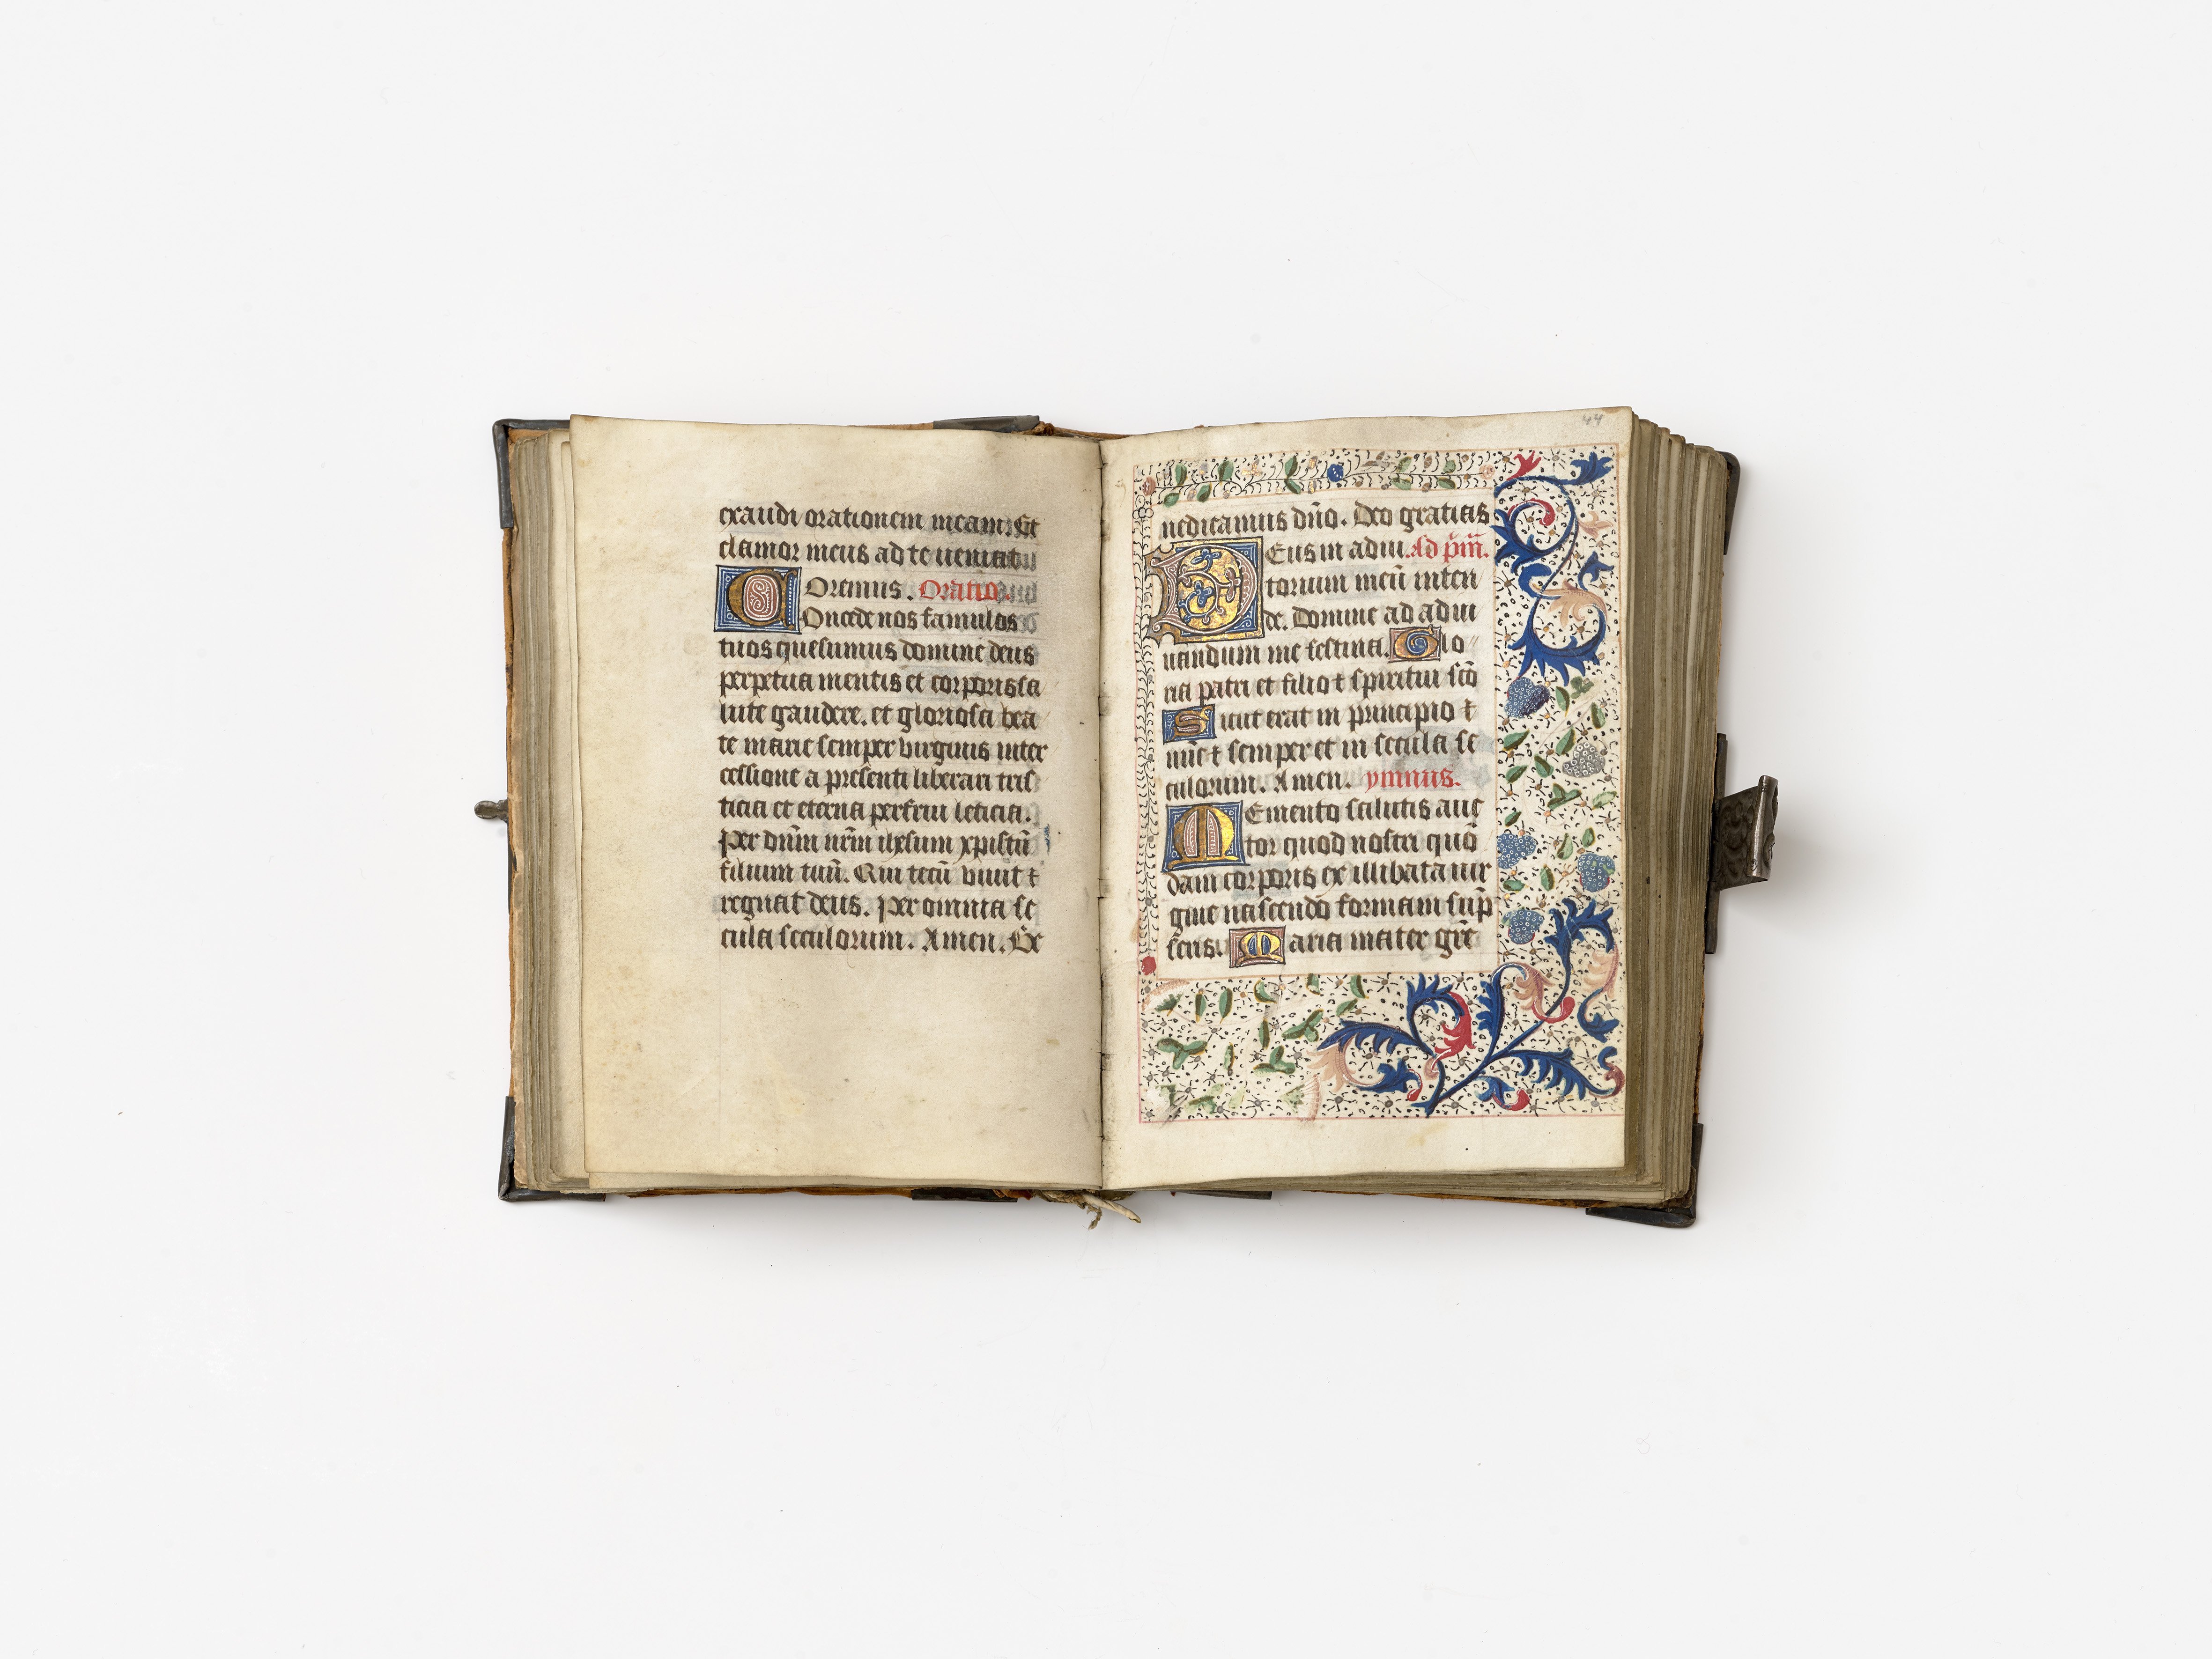 Nordfranzösisches Stundenbuch, 15. Jahrhundert (Städtisches Museum Schloss Rheydt CC BY)